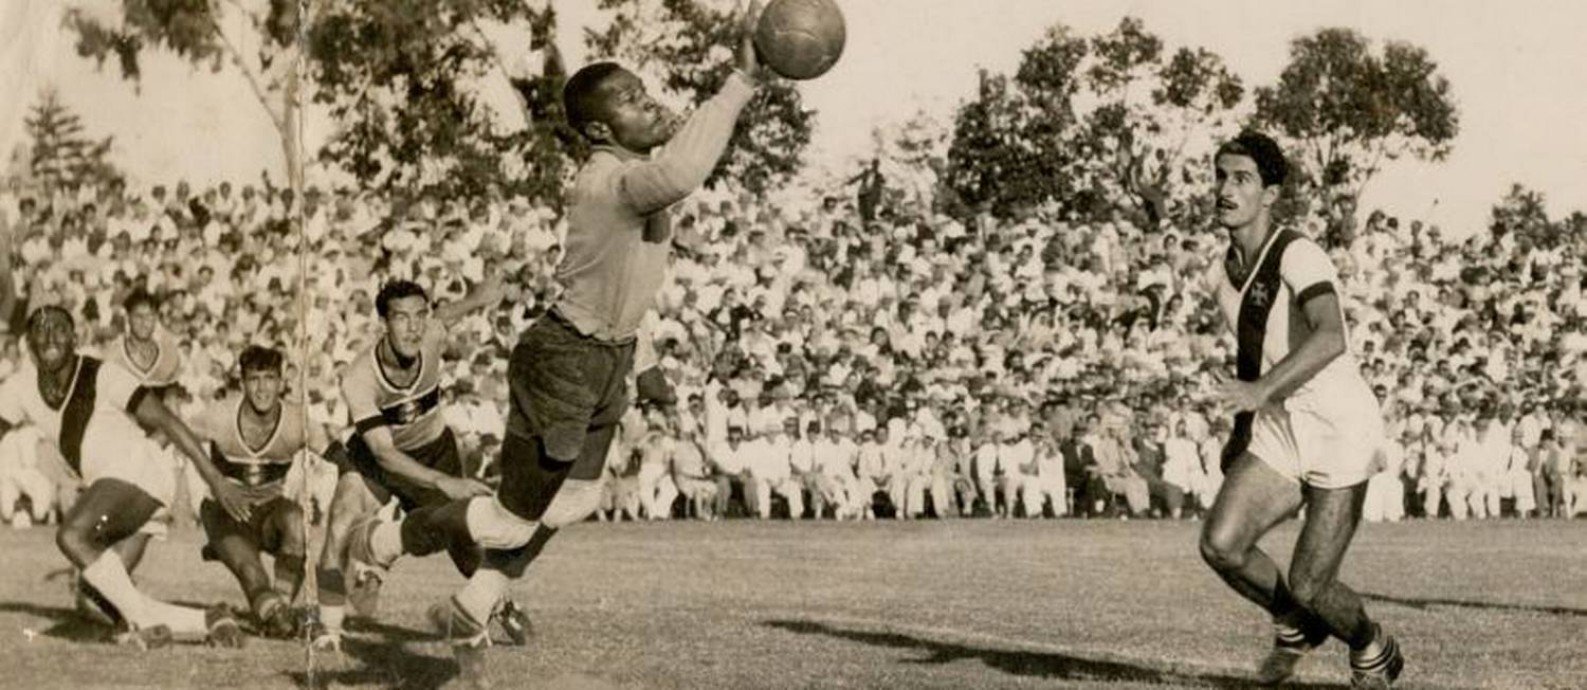 Barbosa em sua estreia pelo Vasco, em 1945, contra o Grêmio